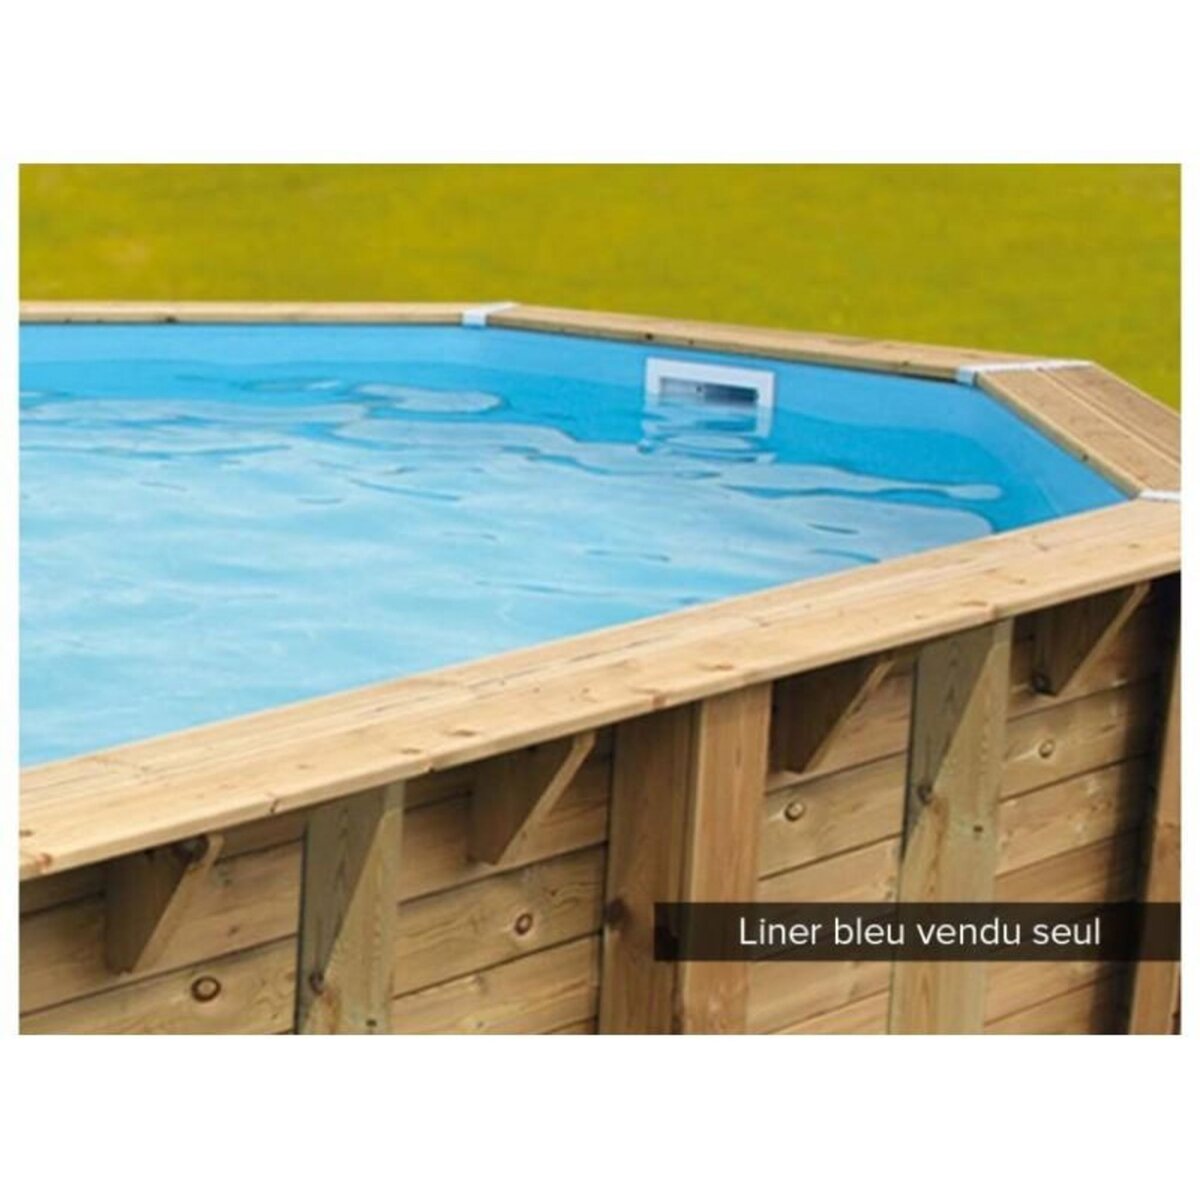 Ubbink Liner seul Bleu pour piscine bois Azura 7,50 x 4,00 x 1,30 m - Ubbink